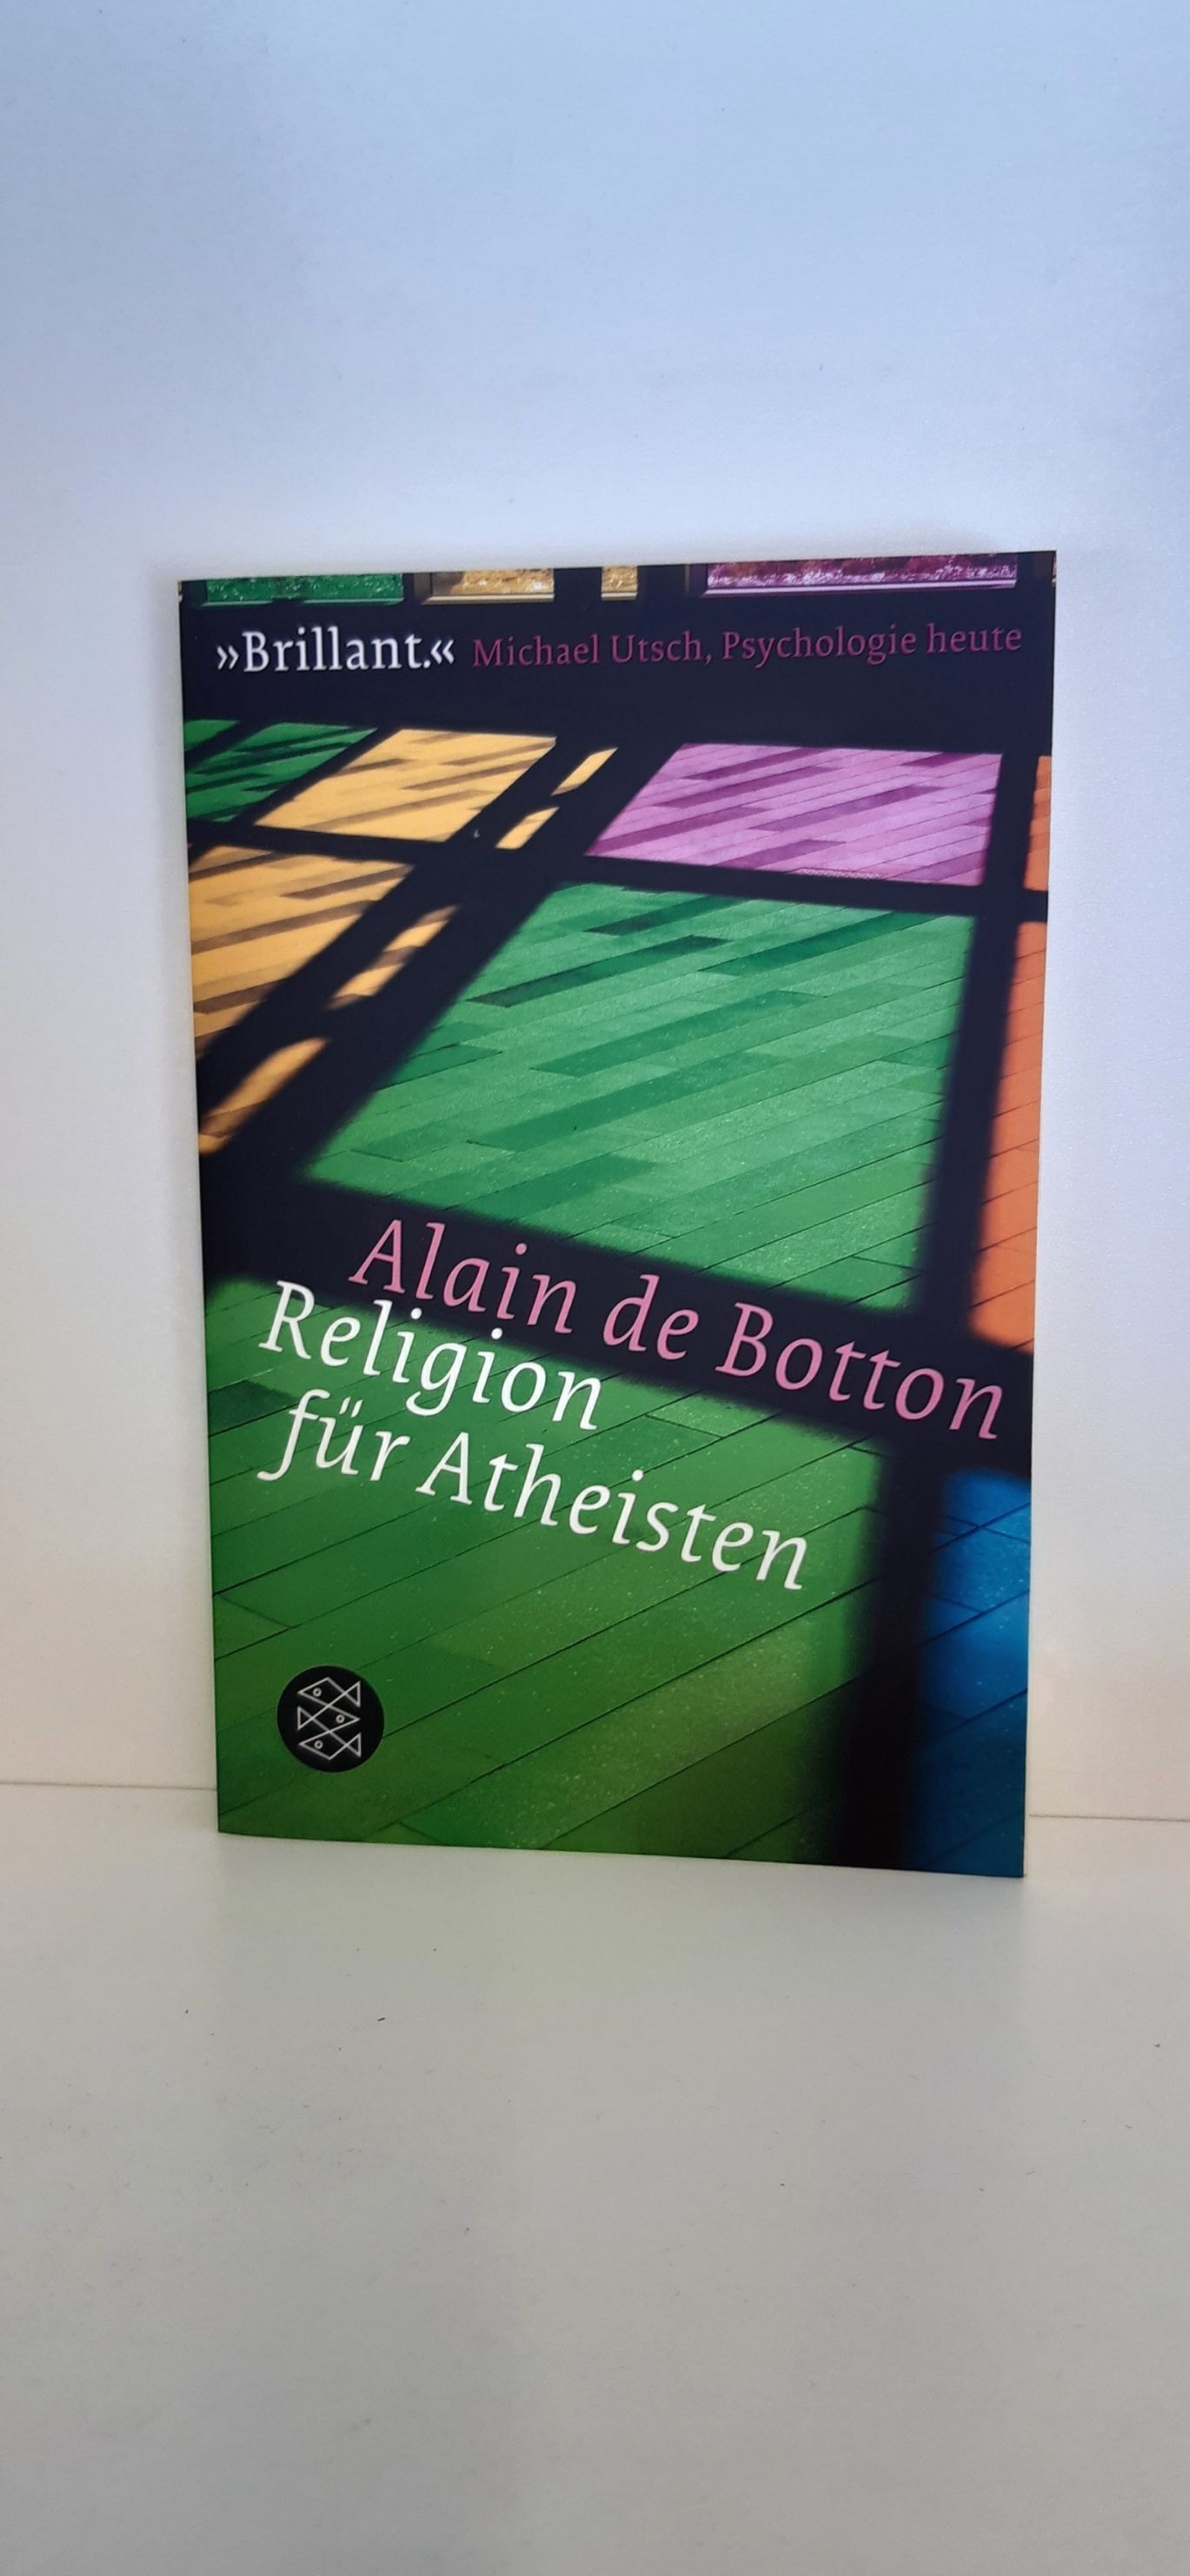 De Botton, Alain Braun, Anne: Religion für Atheisten Vom Nutzen der Religion für das Leben / Alain de Botton; aus dem Englischen von Anne Braun